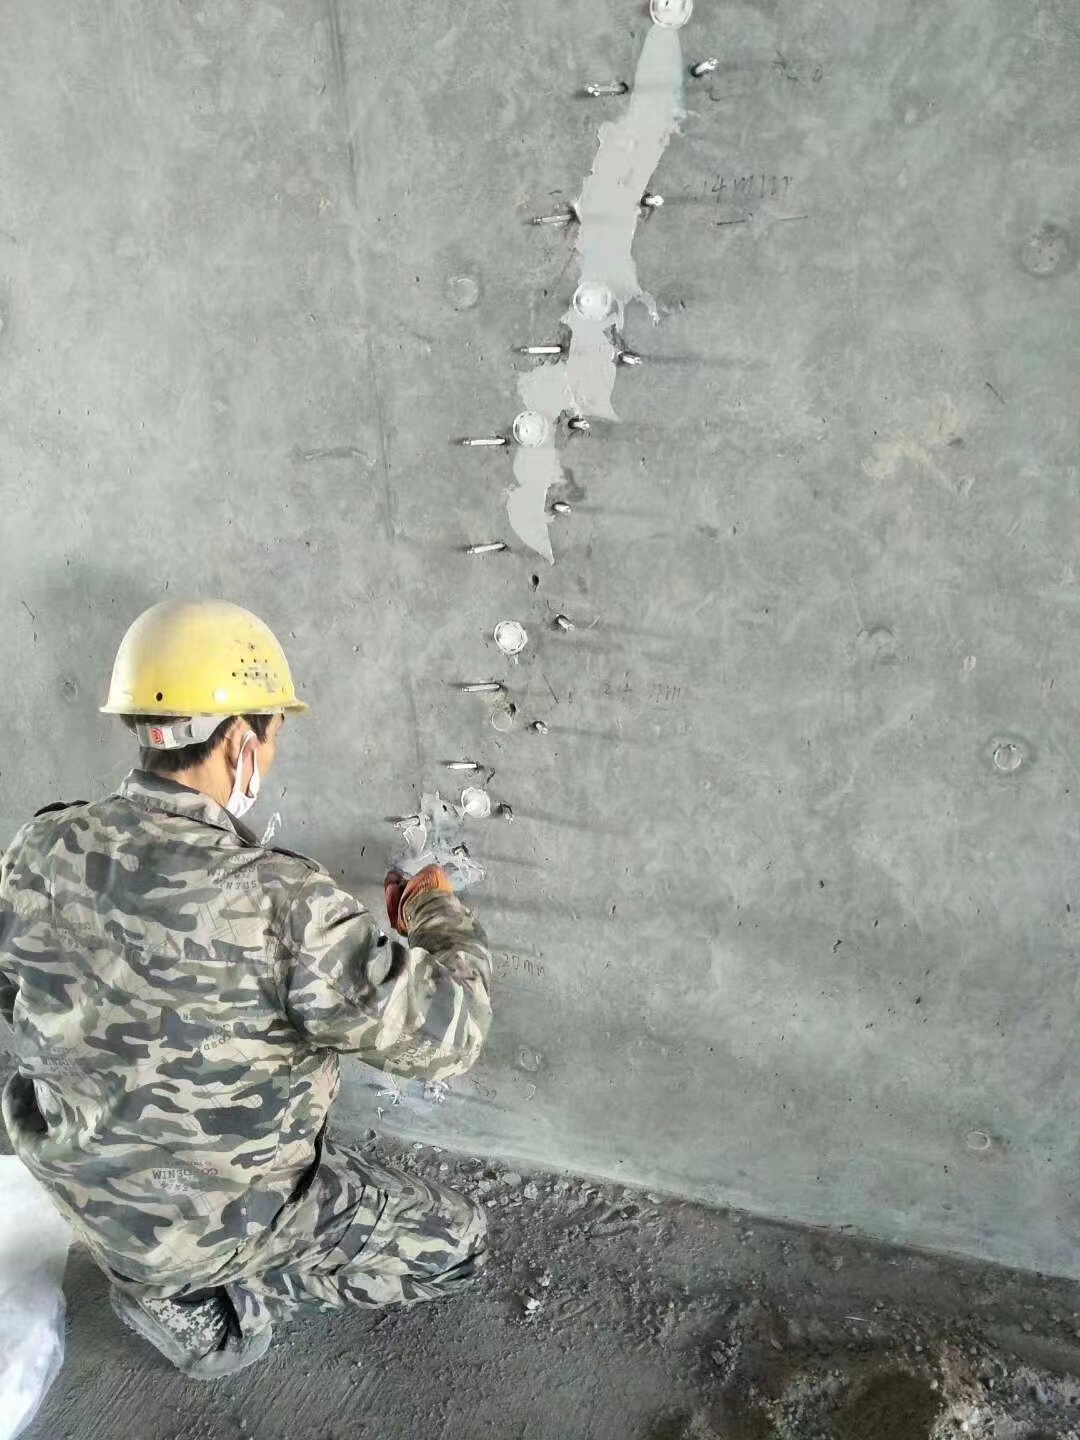 安徽混凝土楼板裂缝加固施工的方案